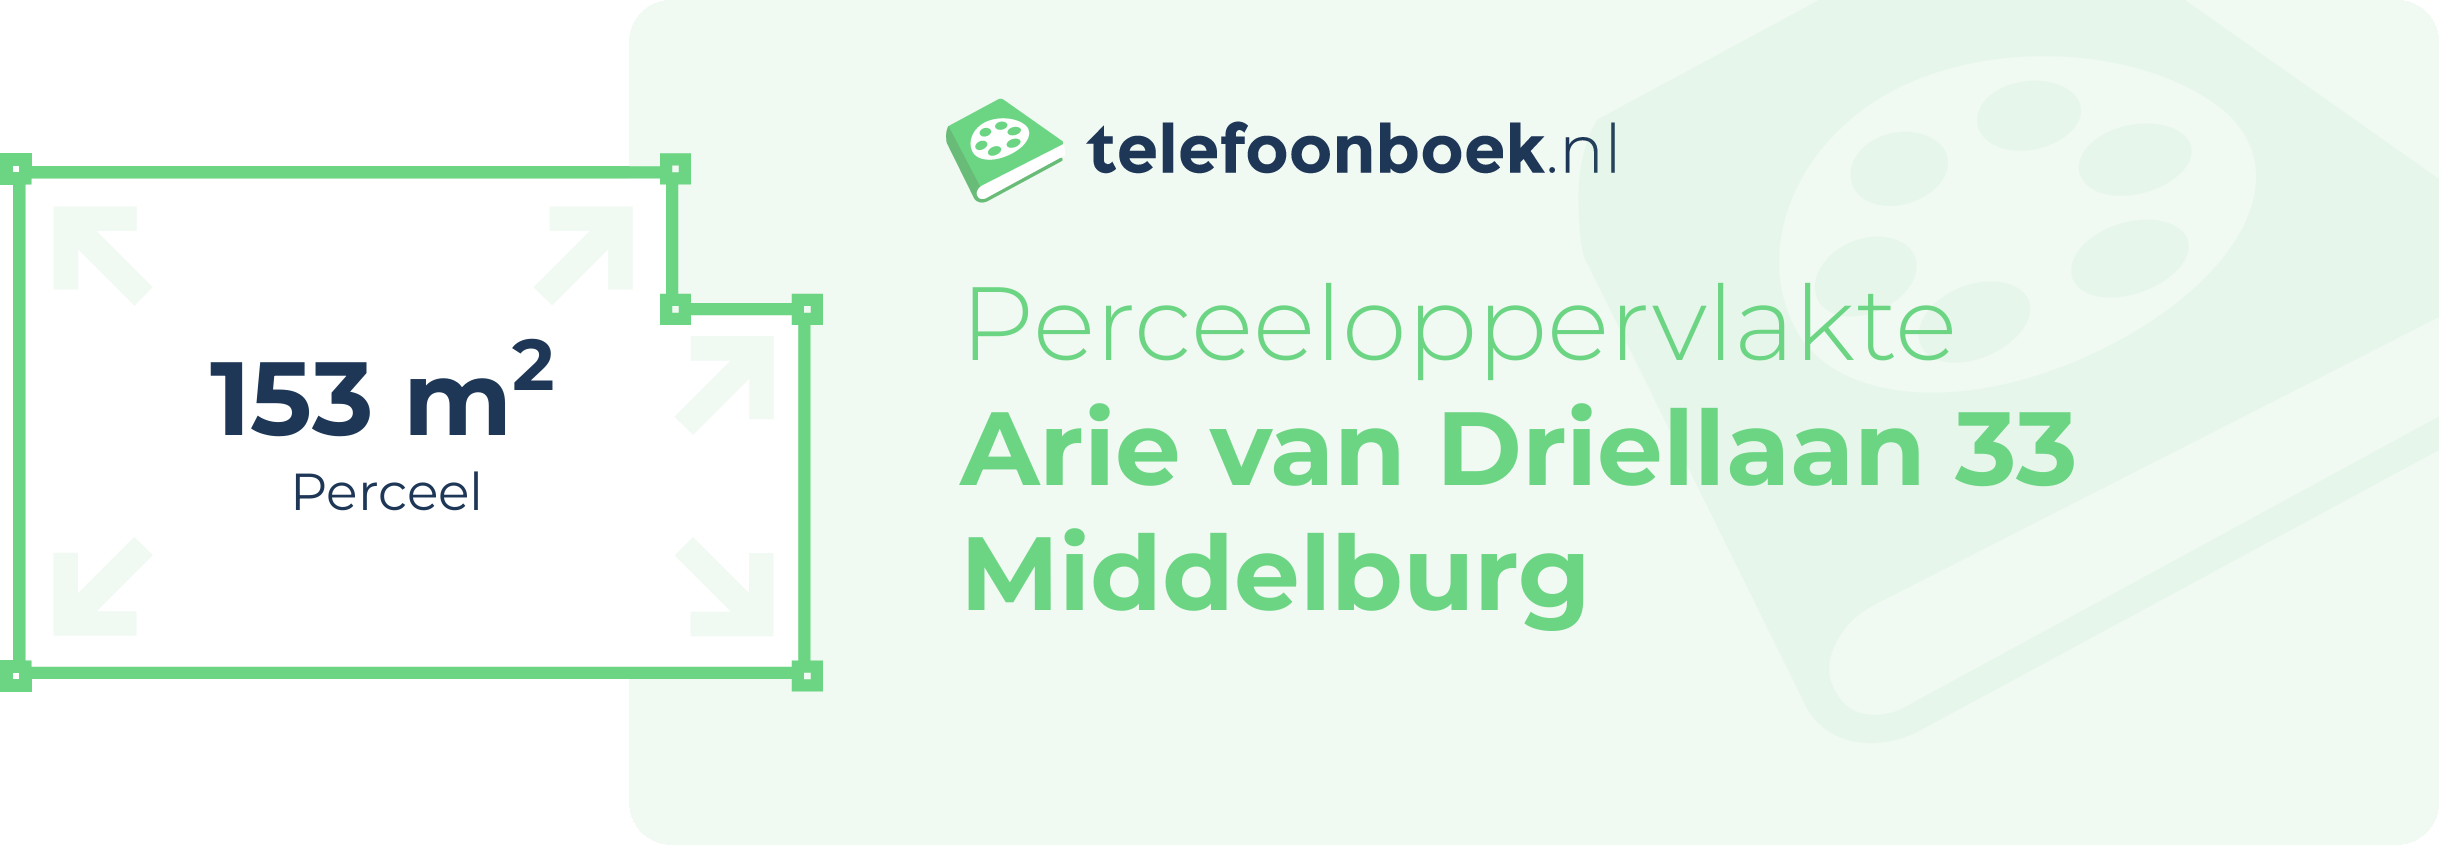 Perceeloppervlakte Arie Van Driellaan 33 Middelburg